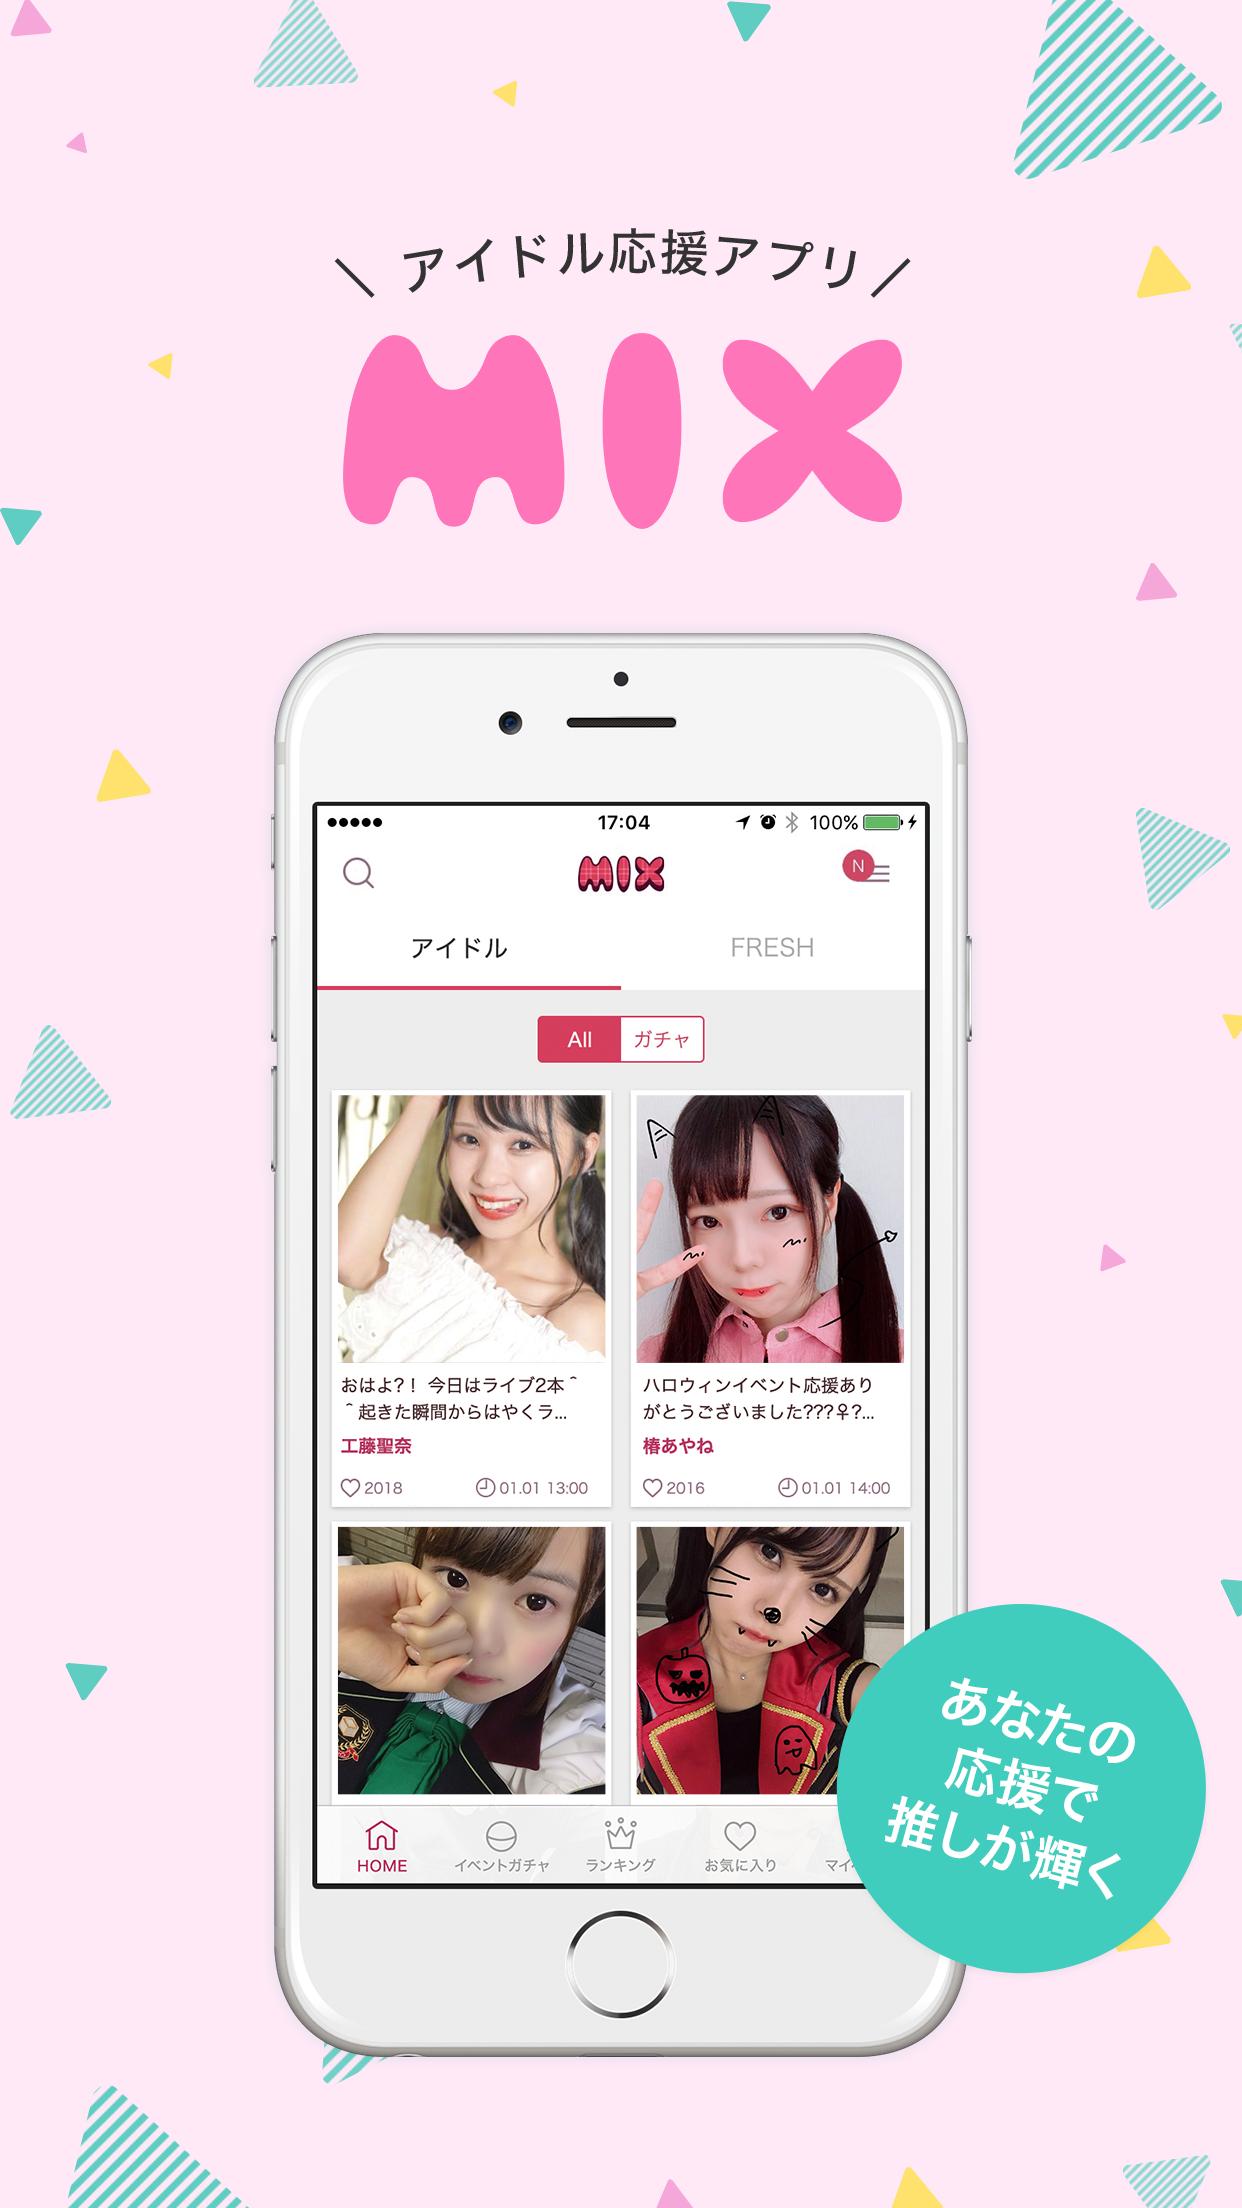 アイドル応援 ジャパンカルチャー発掘アプリ Mix ミックス For Android Apk Download